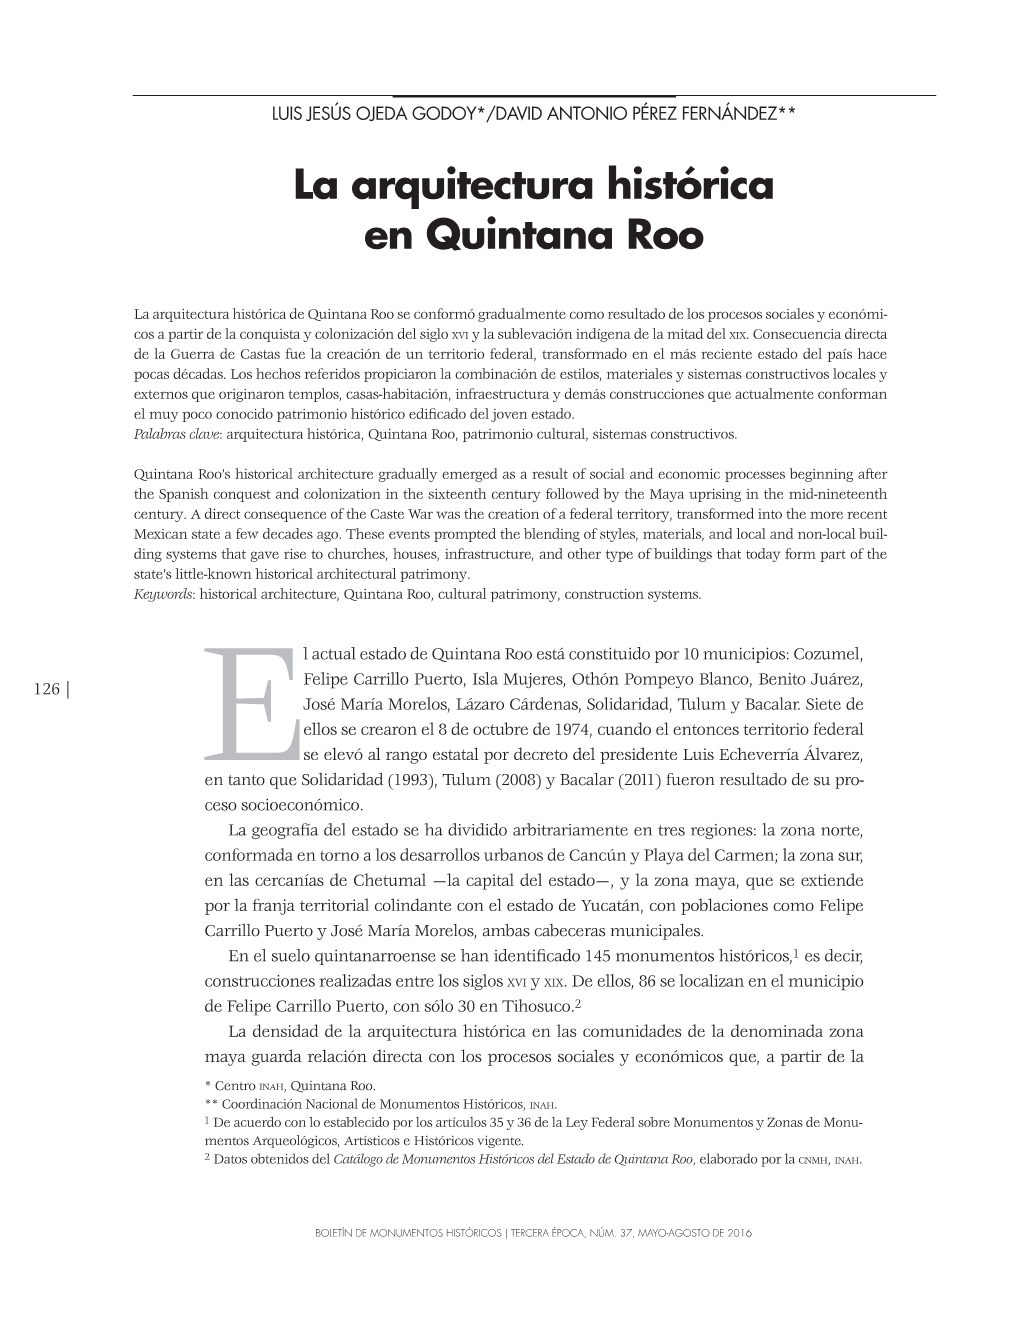 La Arquitectura Histórica En Quintana Roo